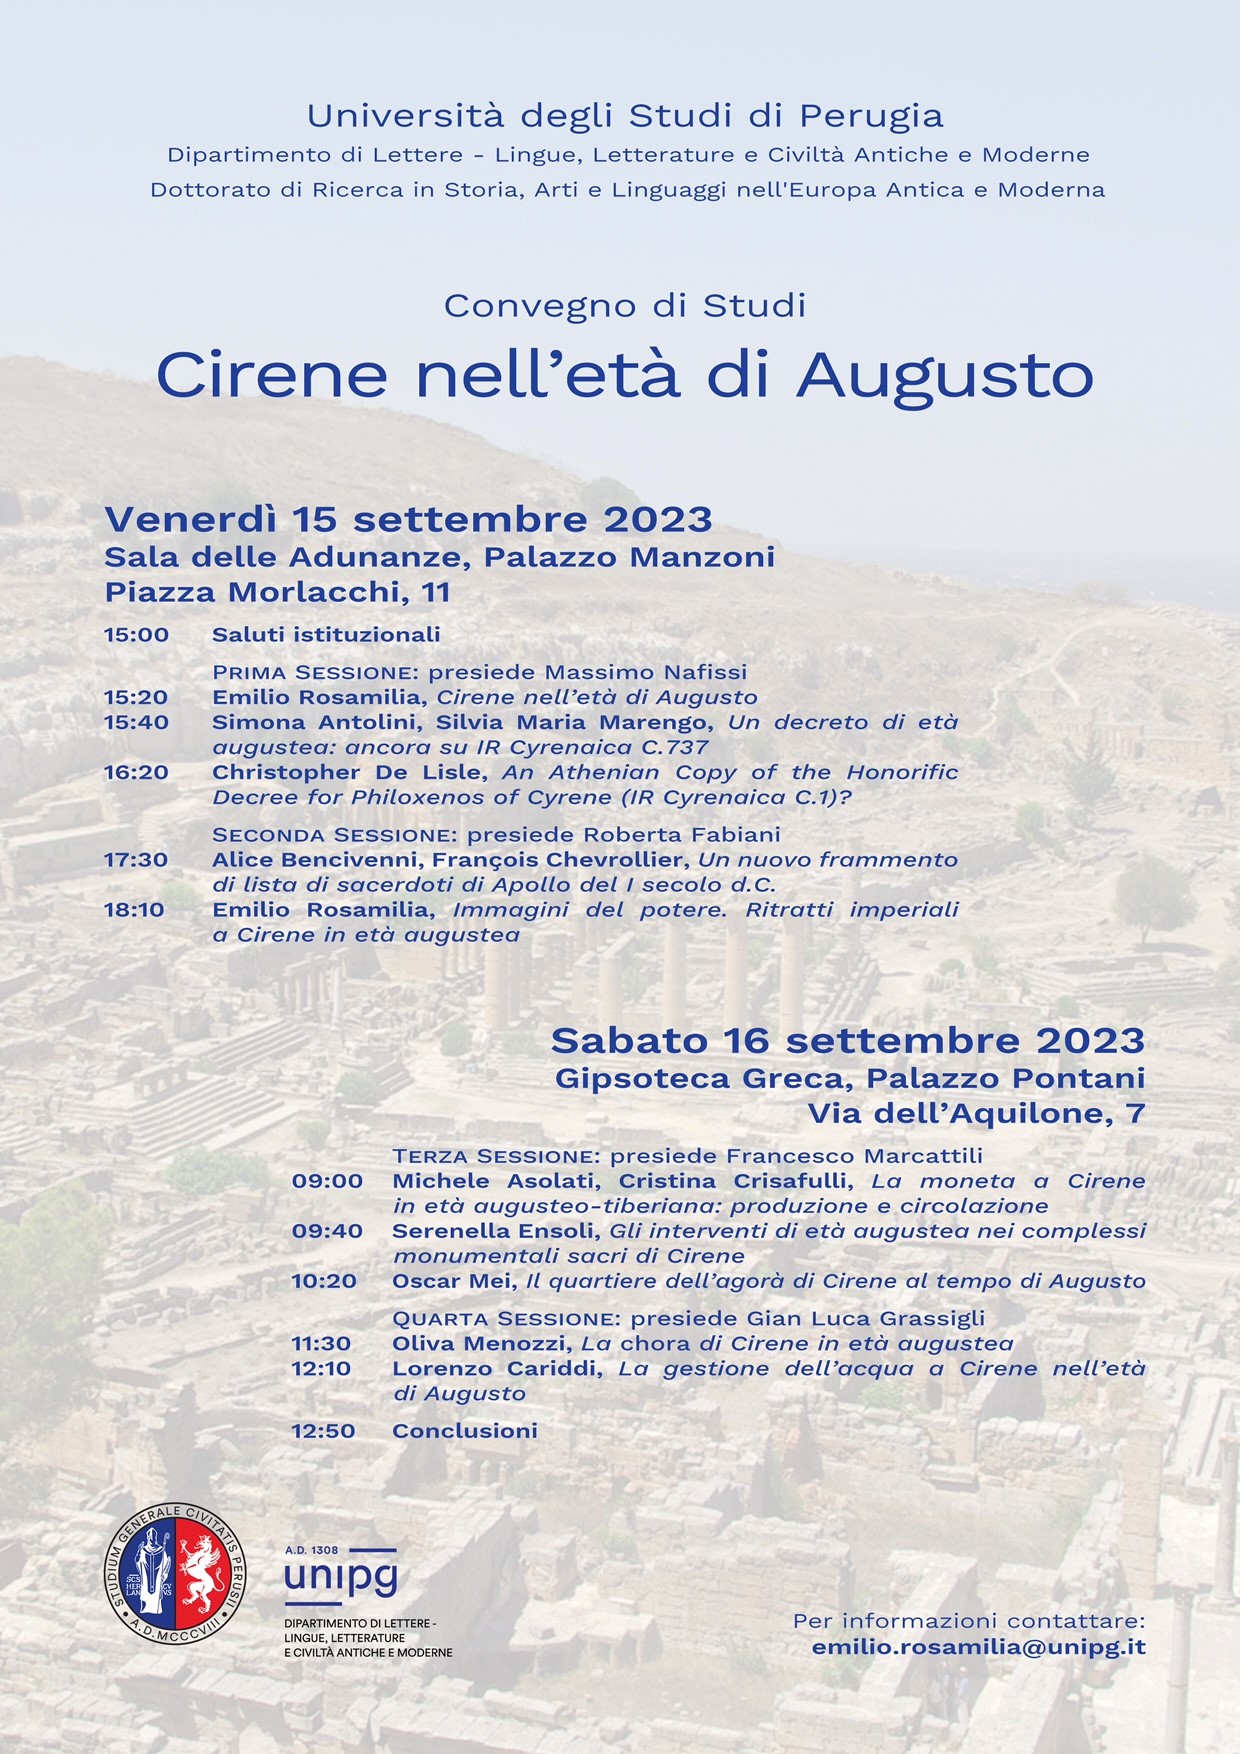 Poster for the Colloquium on Cirene nell'età di Augusto